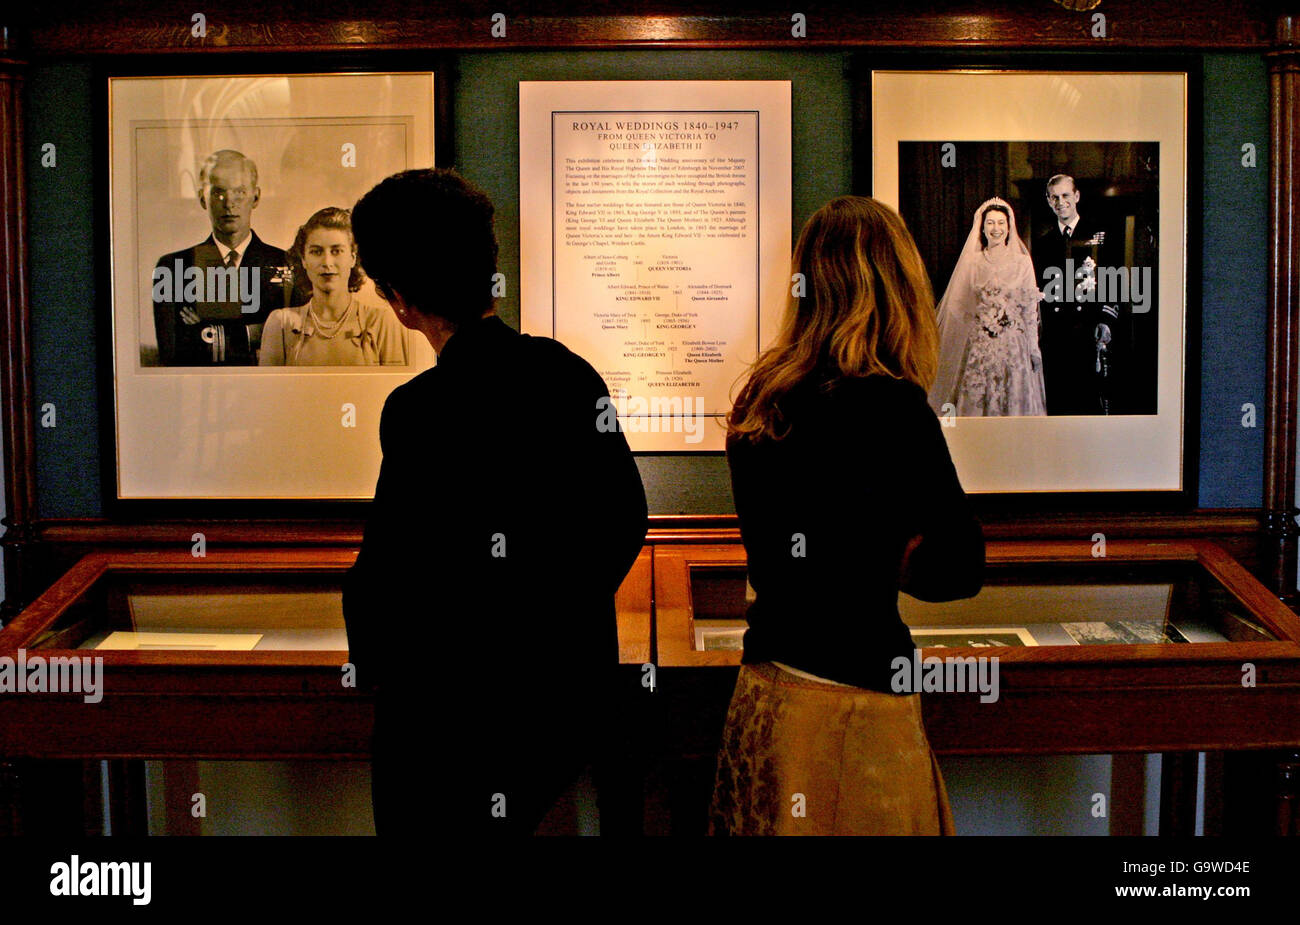 Zwei Damen sehen den königlichen Stammbaum und begleitende Porträts in einer Ausstellung in Windsor Castle, Berkshire. Stockfoto